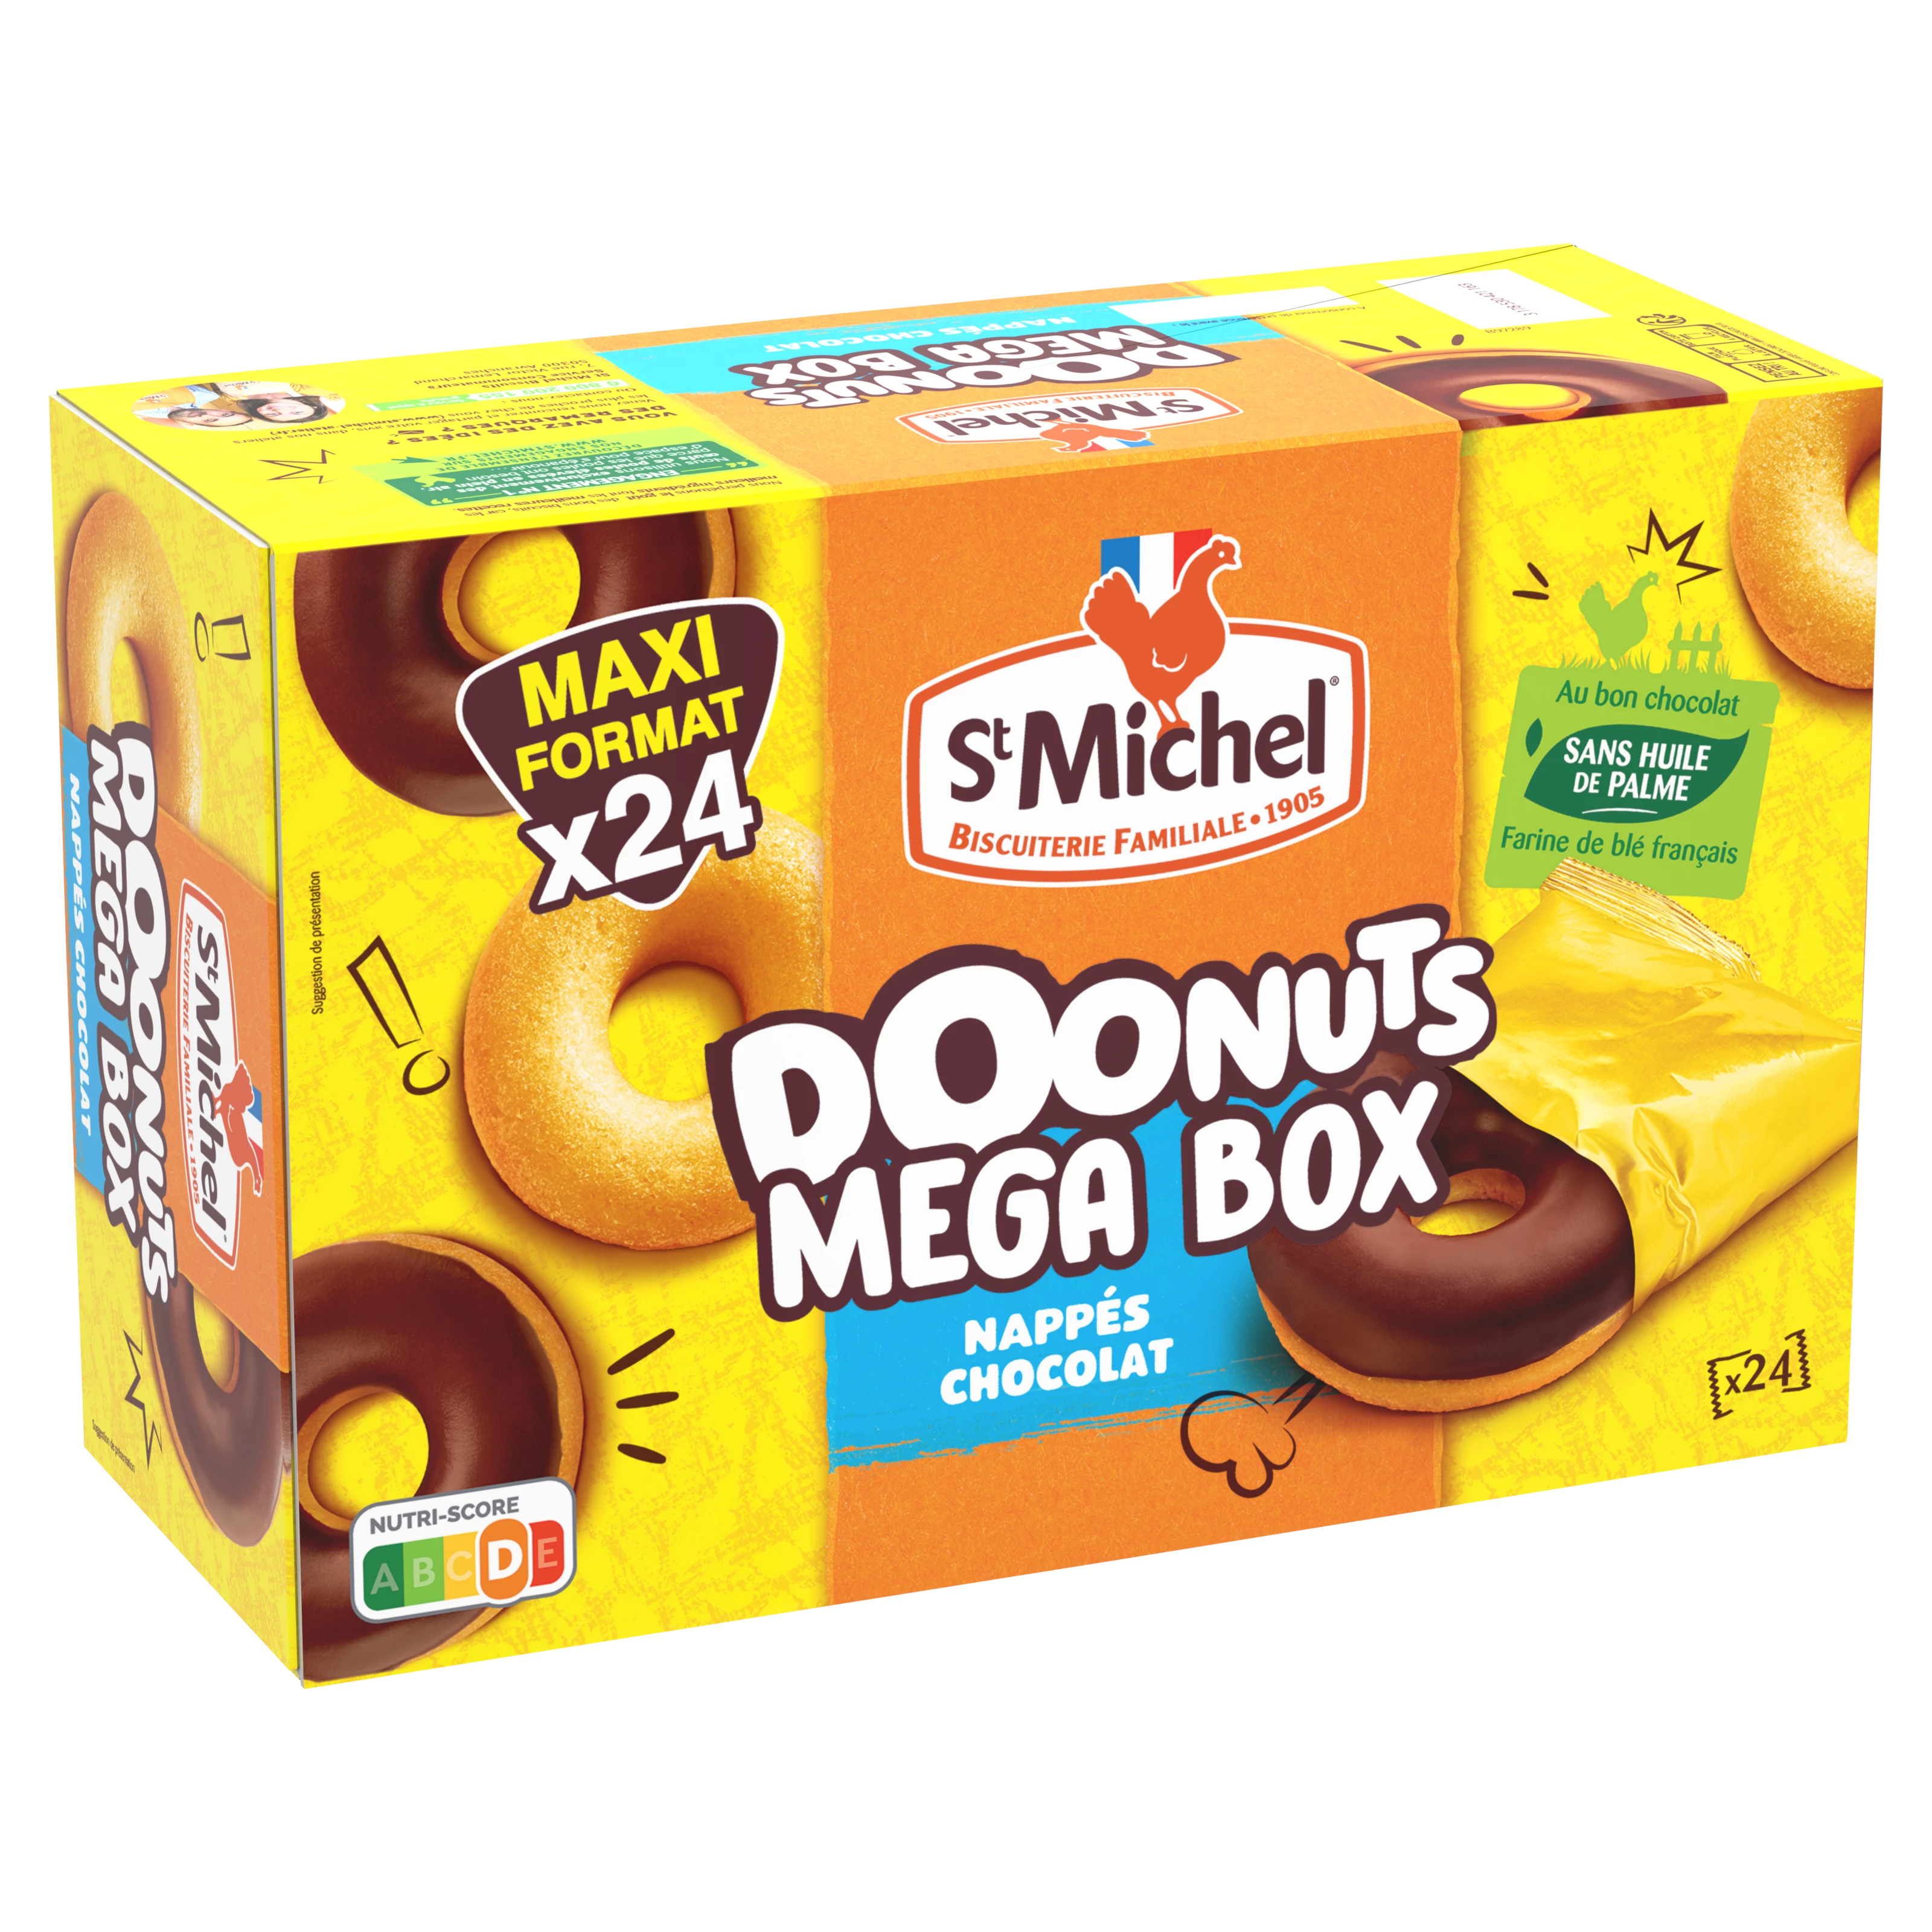 Pannolini Donuts Tine Box X24 72 - ST MICHEL